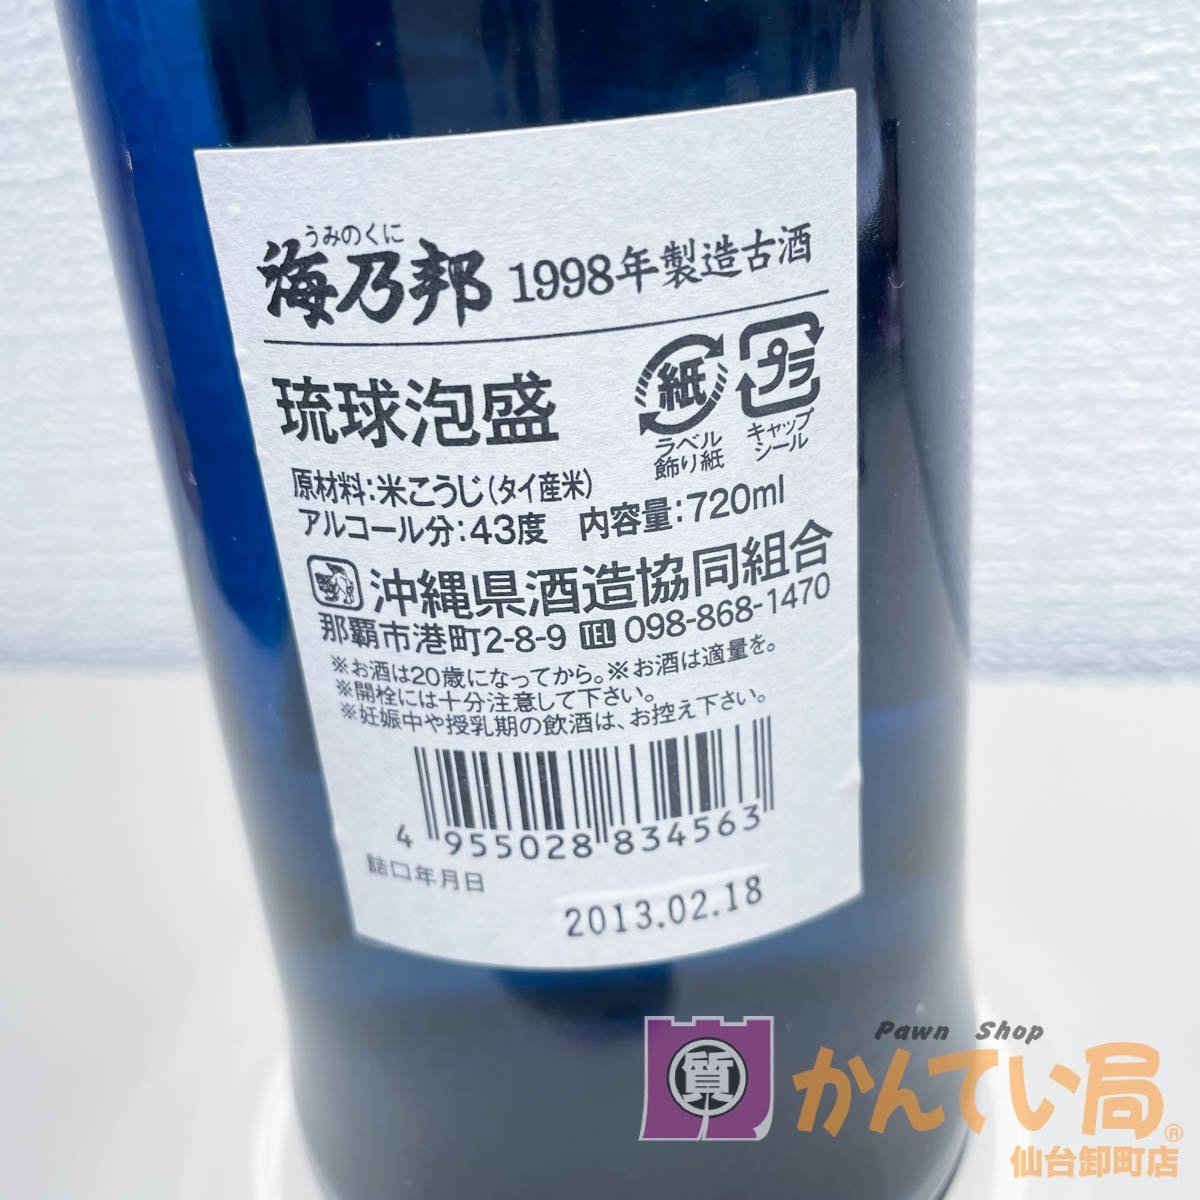 [9356-003]琉球泡盛 海乃邦 1998年製造古酒【中古】未開栓 泡盛 現状販売_画像4